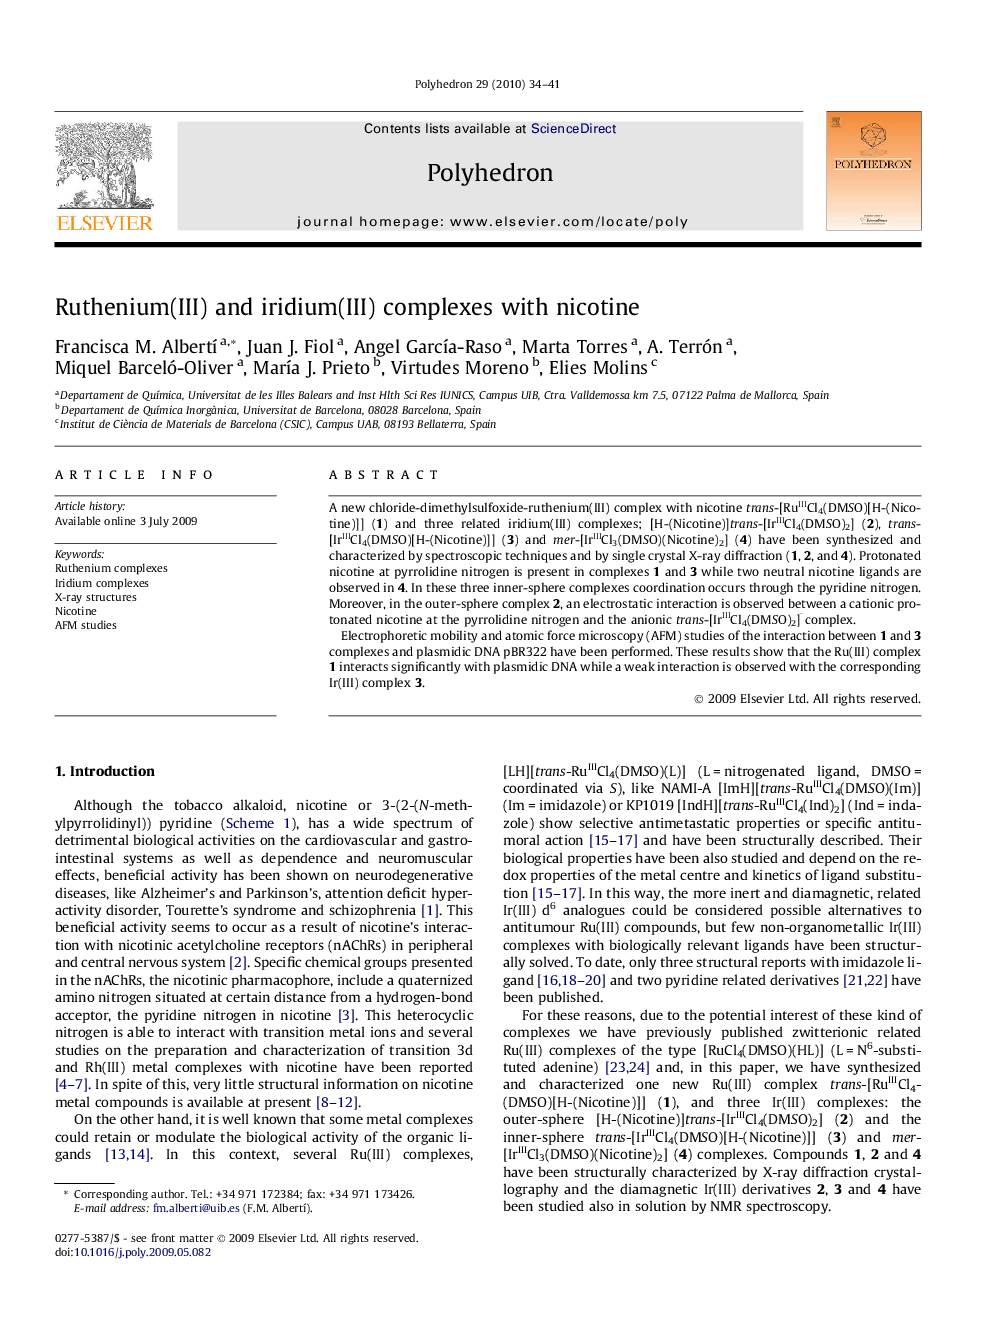 Ruthenium(III) and iridium(III) complexes with nicotine